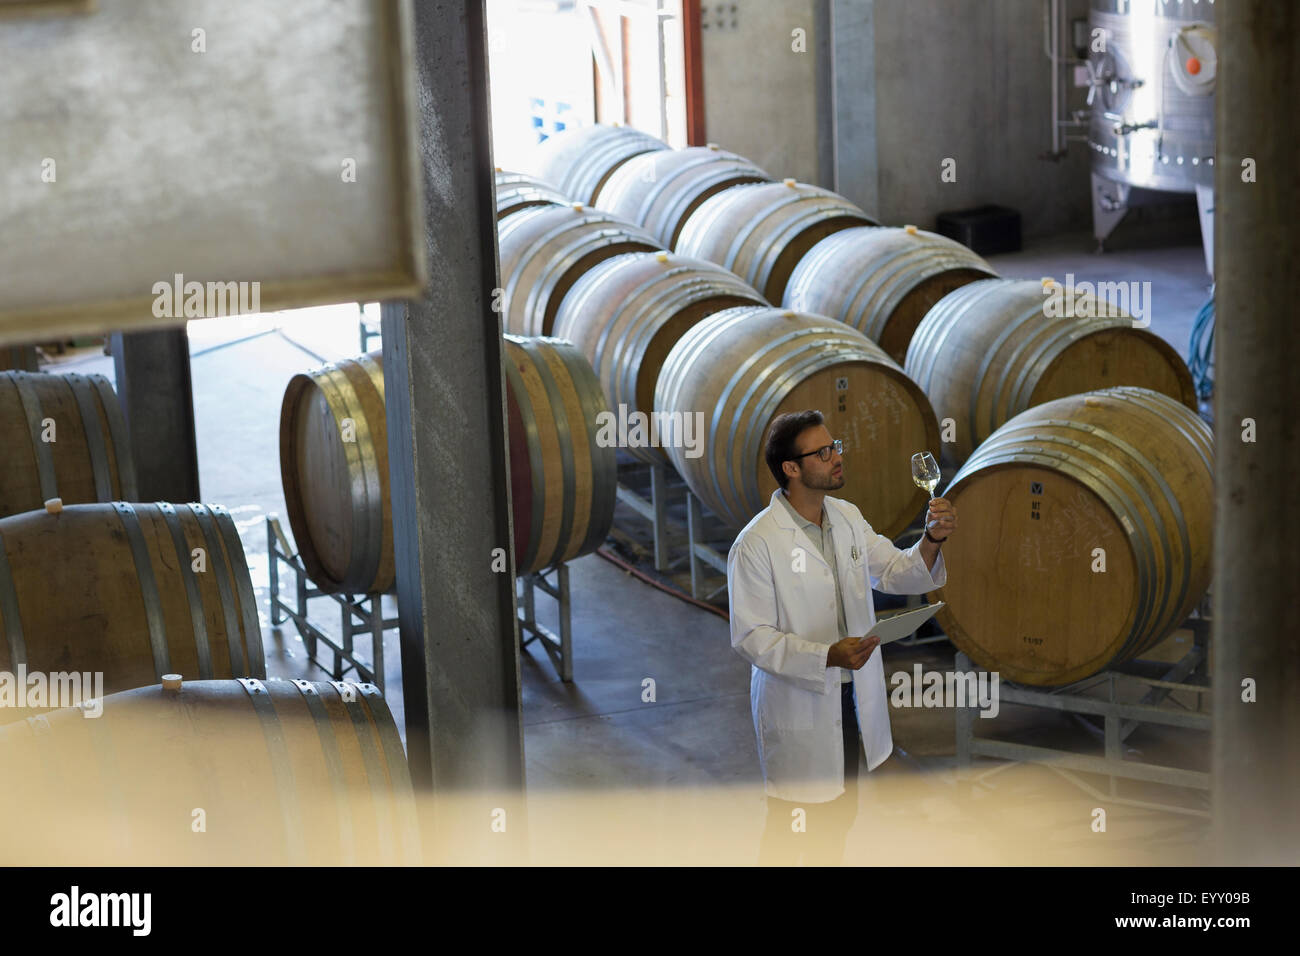 Vigneron in lab coat examen de vin en cave de vinification Banque D'Images